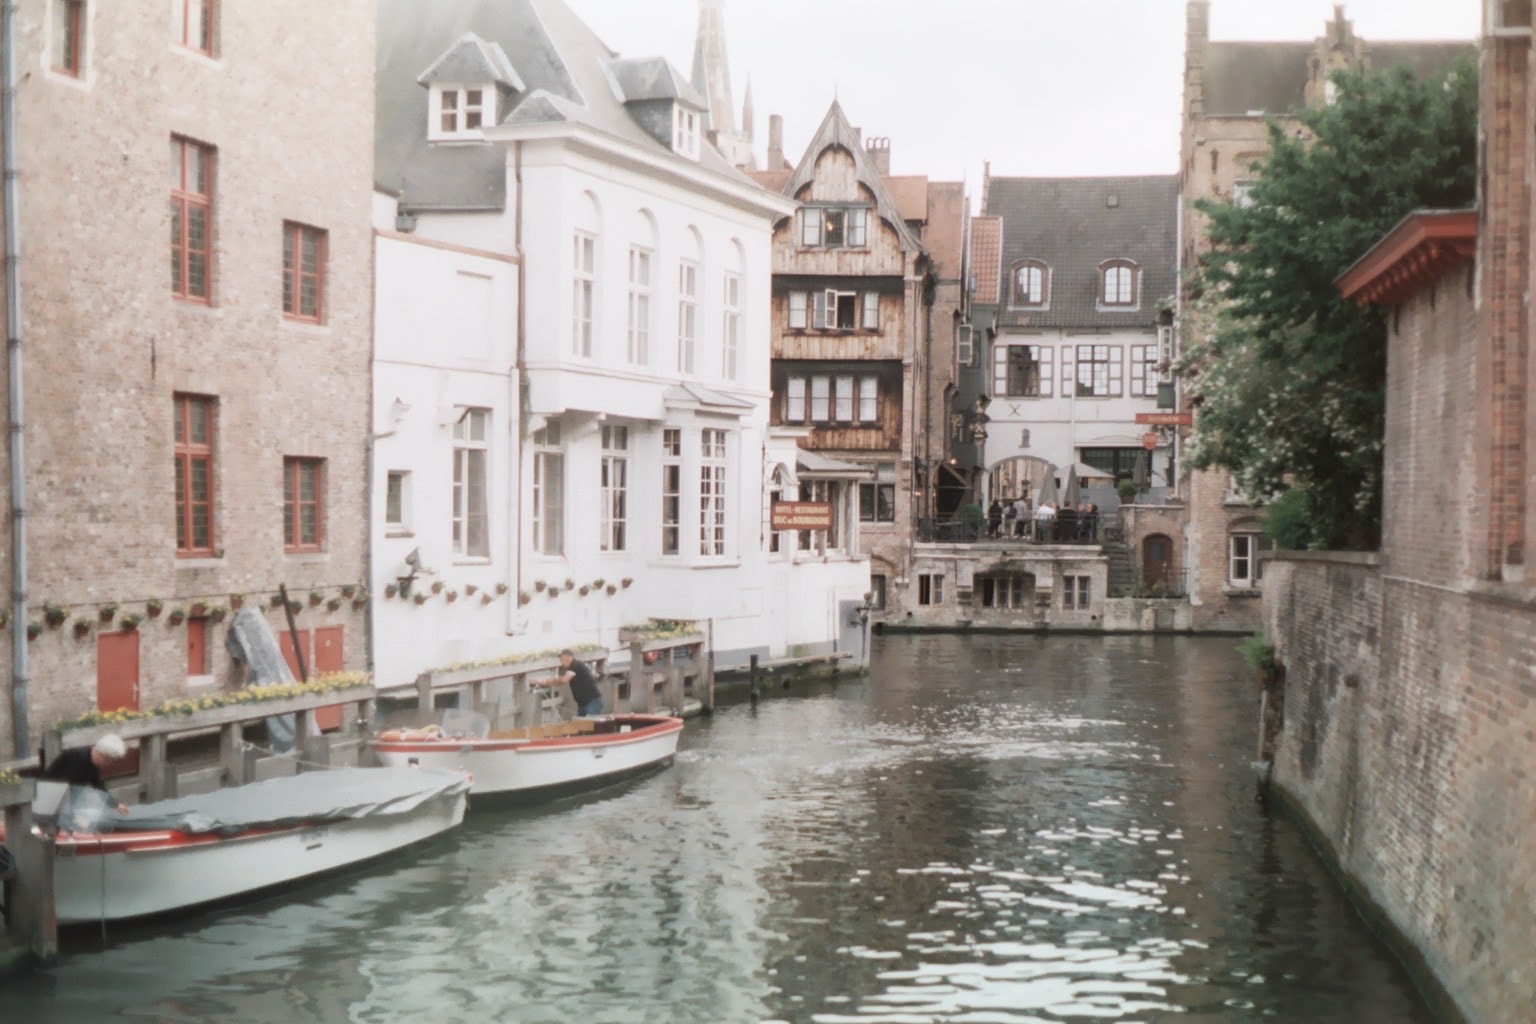 Brugge door een analoge lens